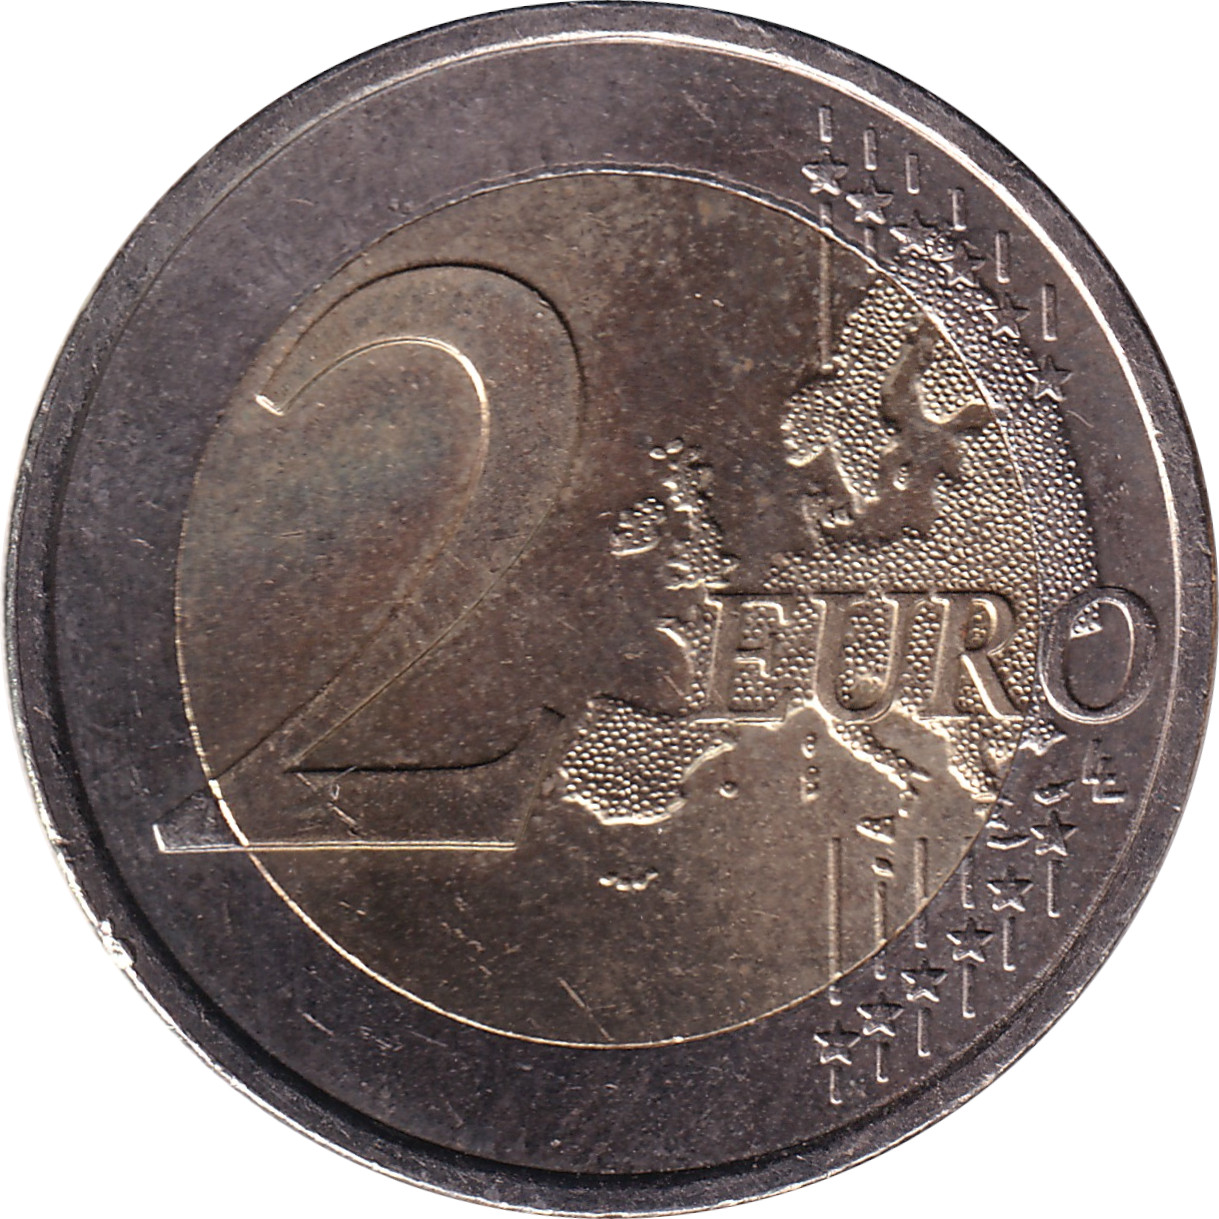 2 euro - Traité de Rome - Grèce